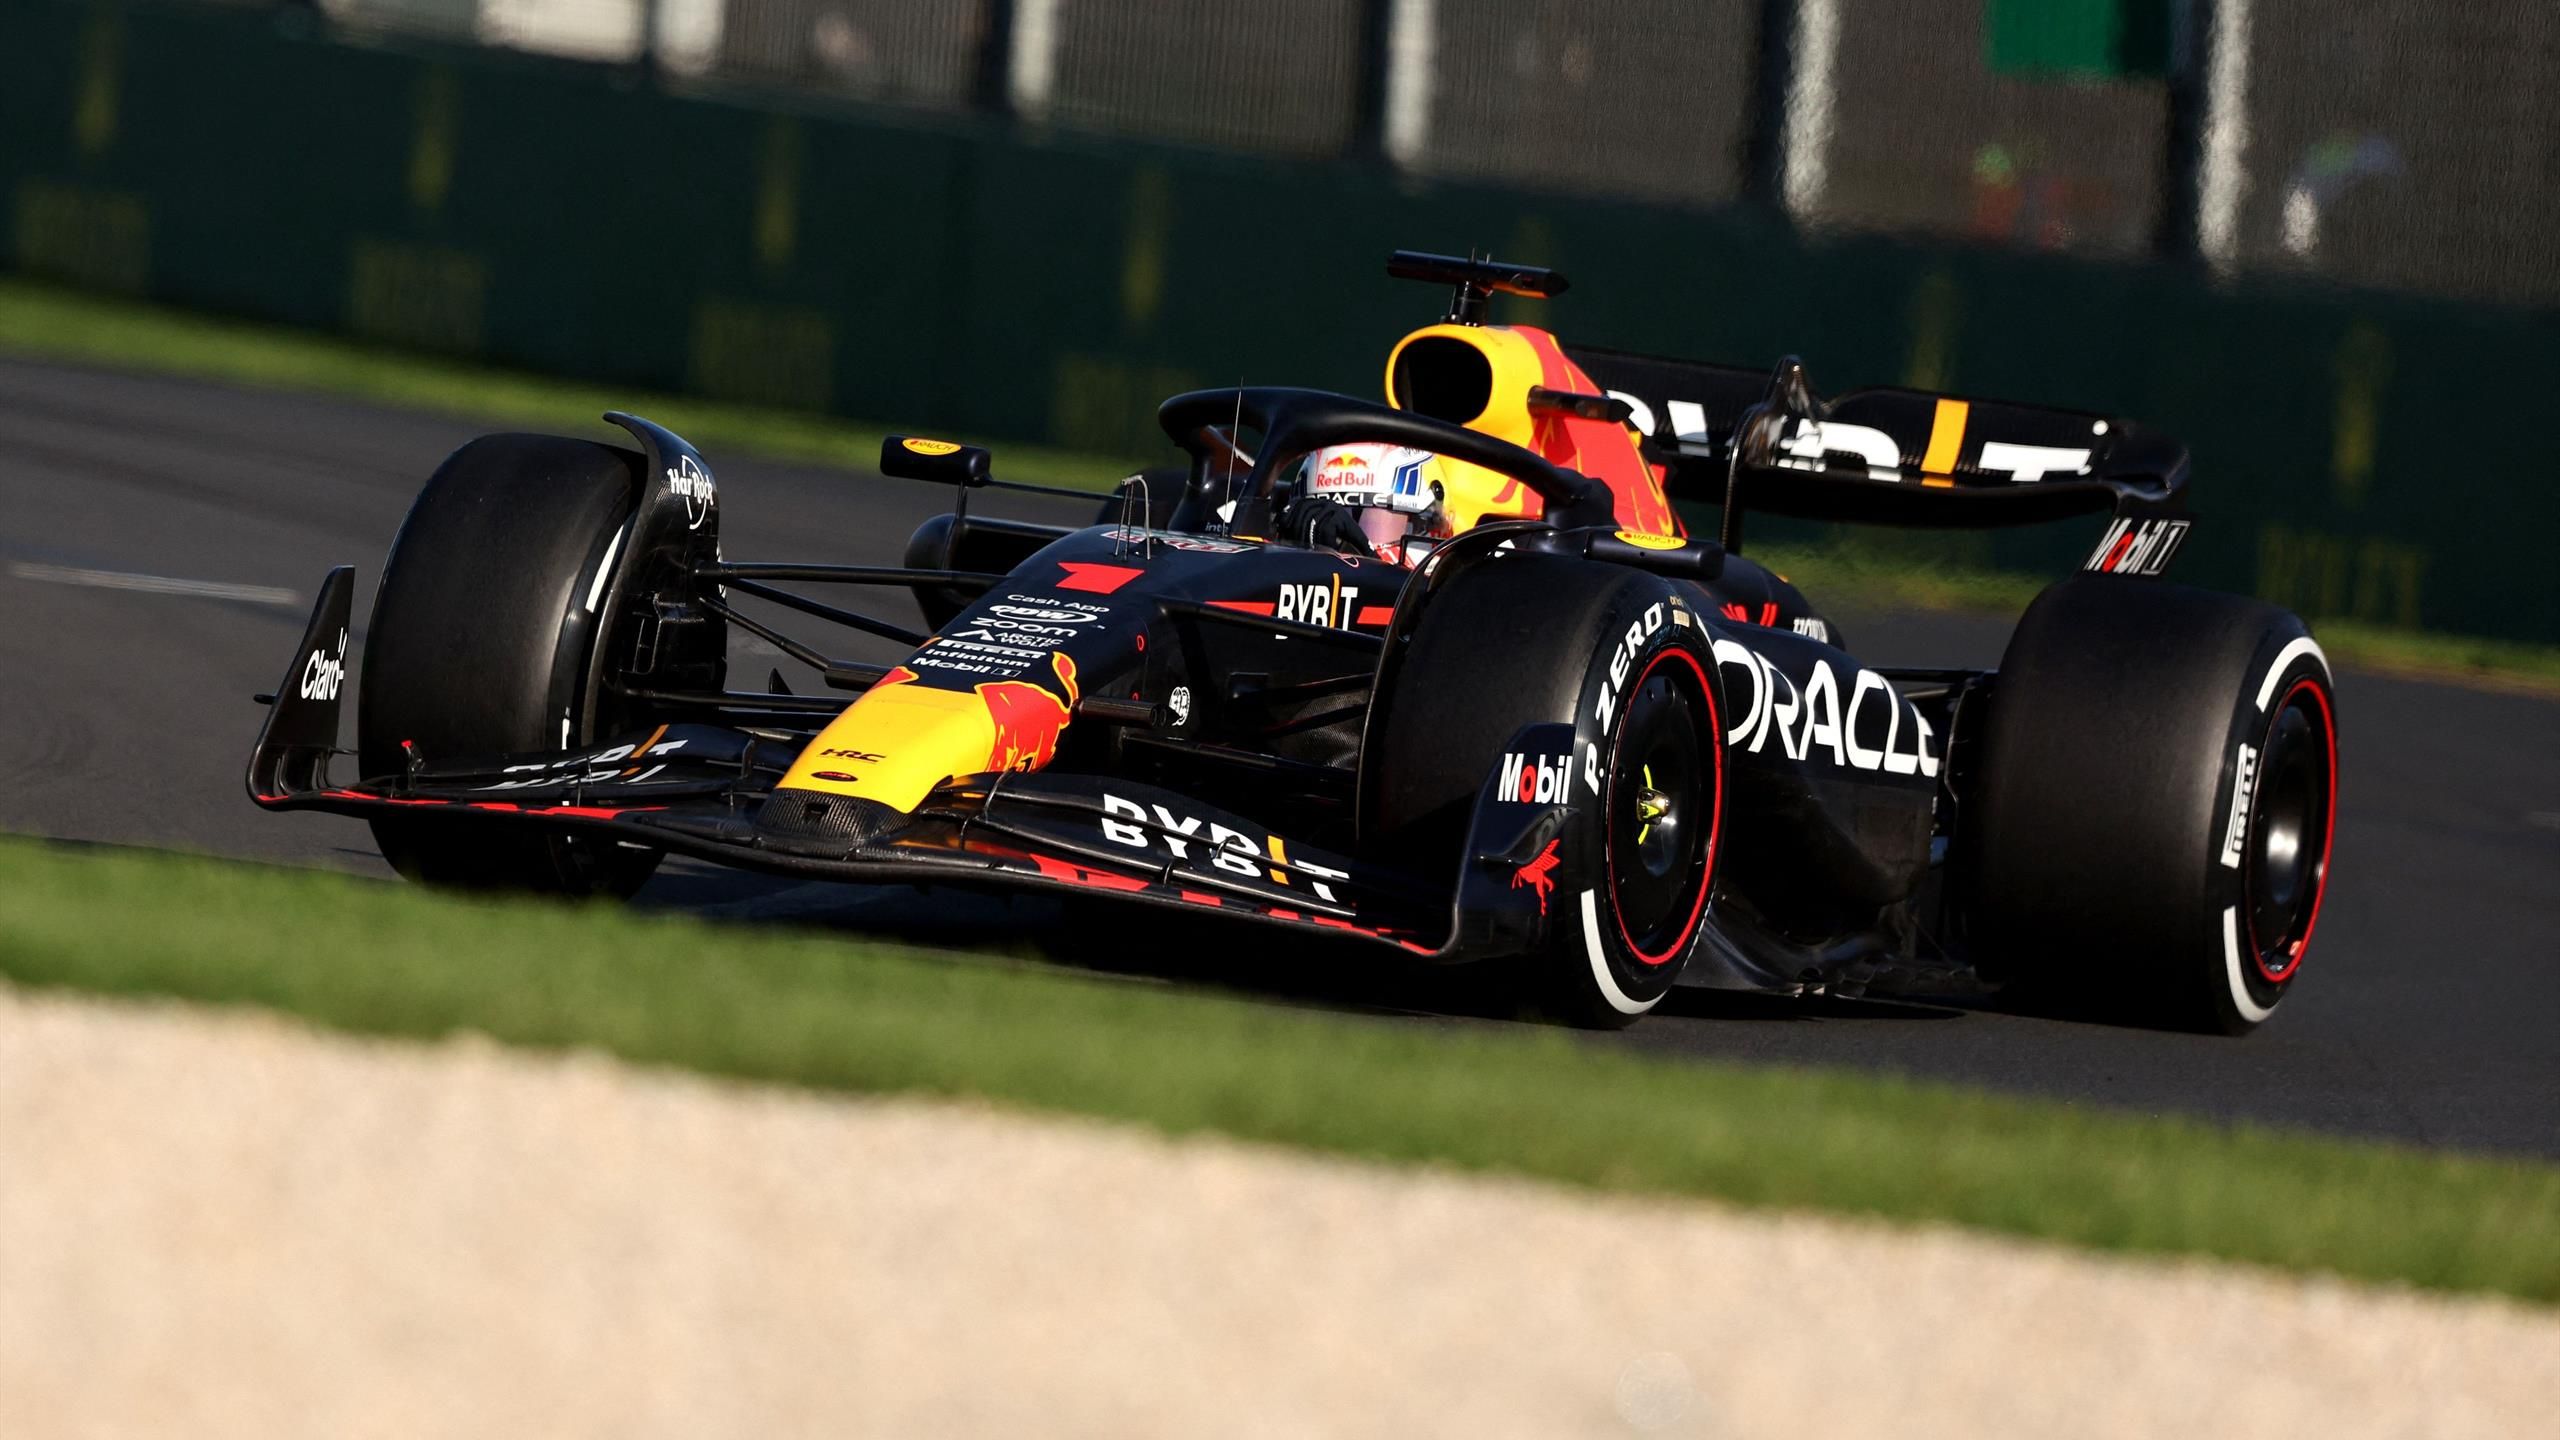 Max Verstappen triumphiert nach Chaos-Schlussphase in Melbourne - Hamilton und Alonso auf dem Podium